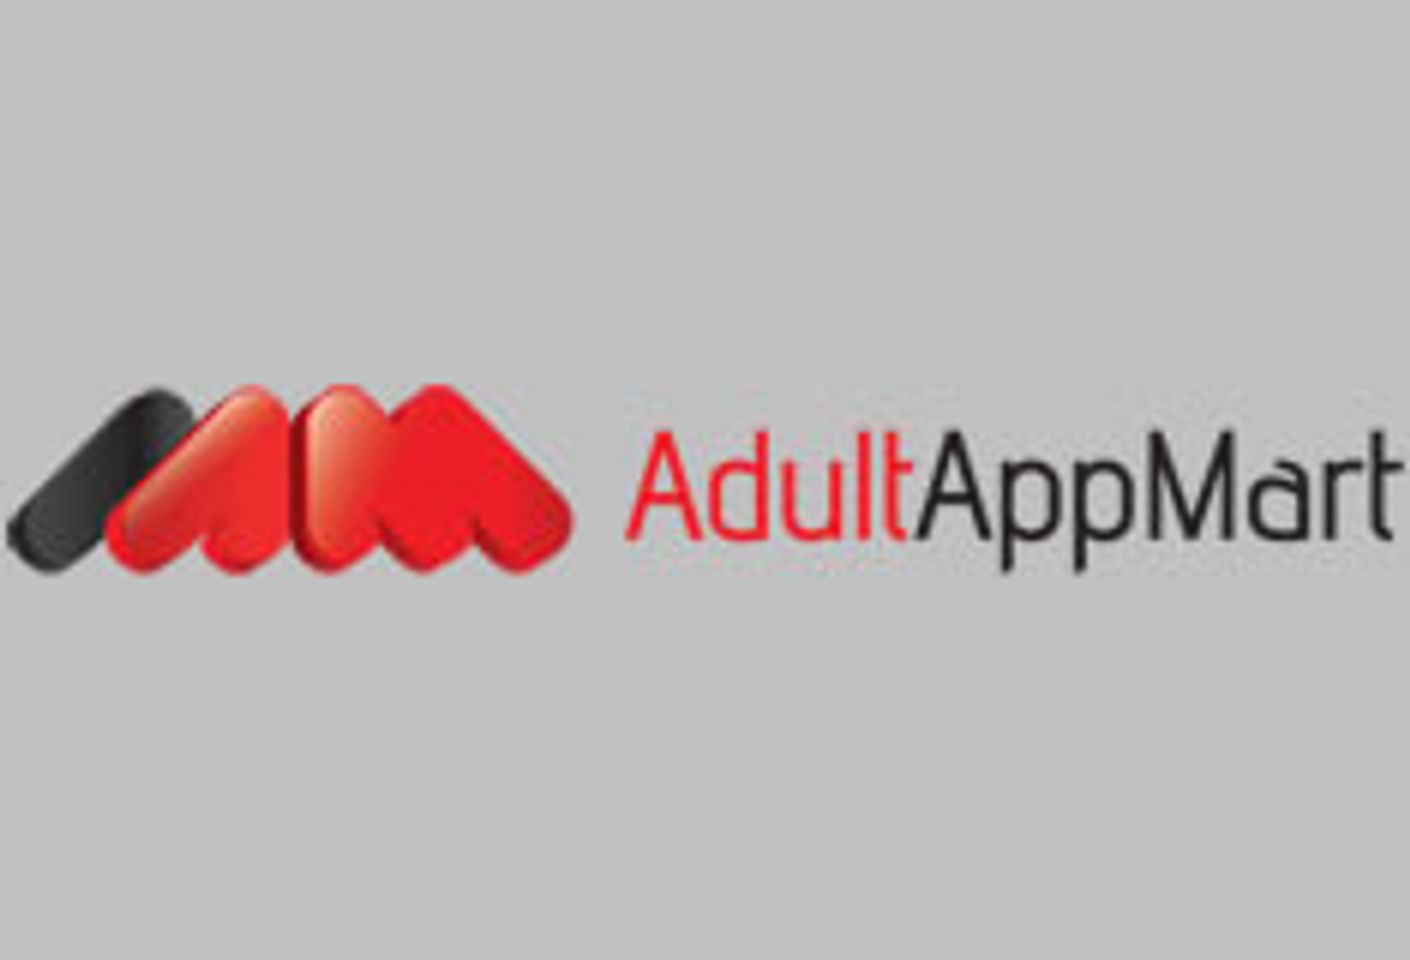 AdultAppMart, Cybersocket Launch 1st Official Cybersocket App